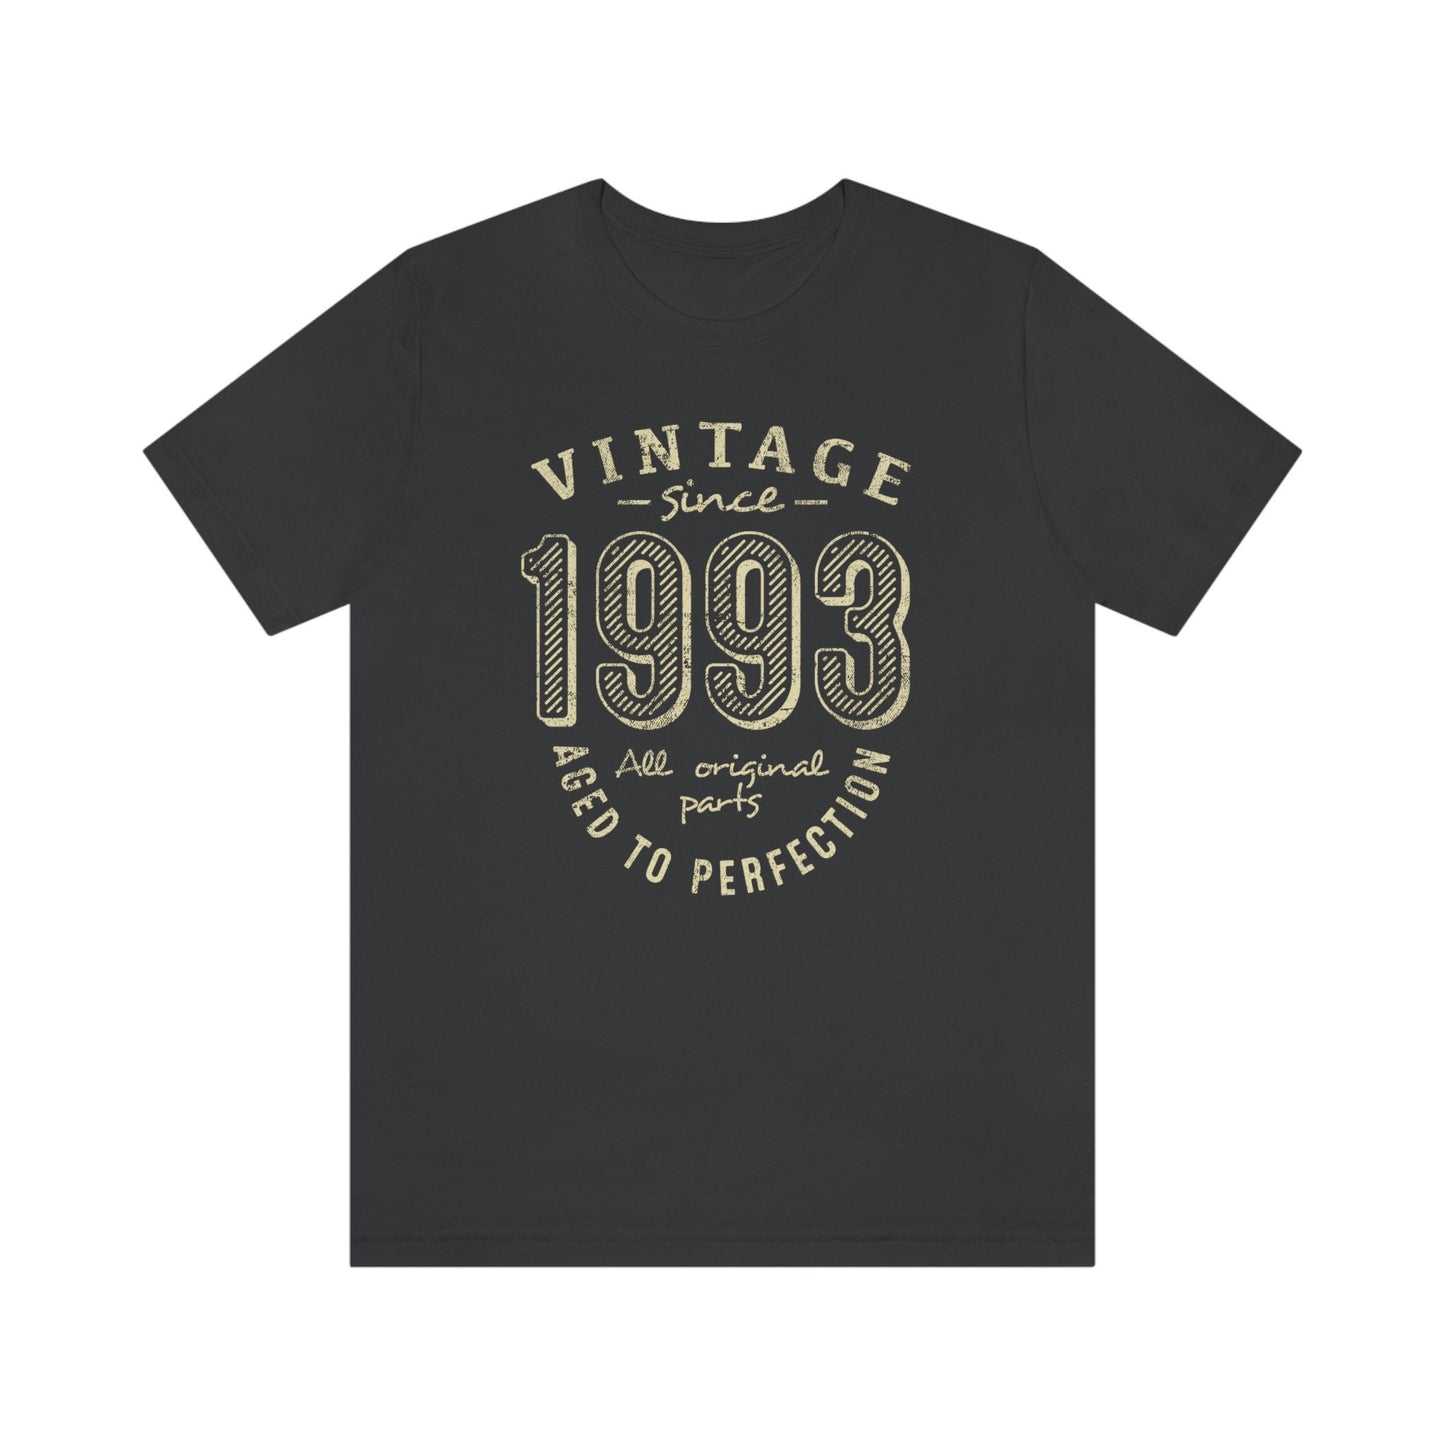 Vintage birthday gift t-shirt for women or men, Vintage since 1993 birthday shirt for brother